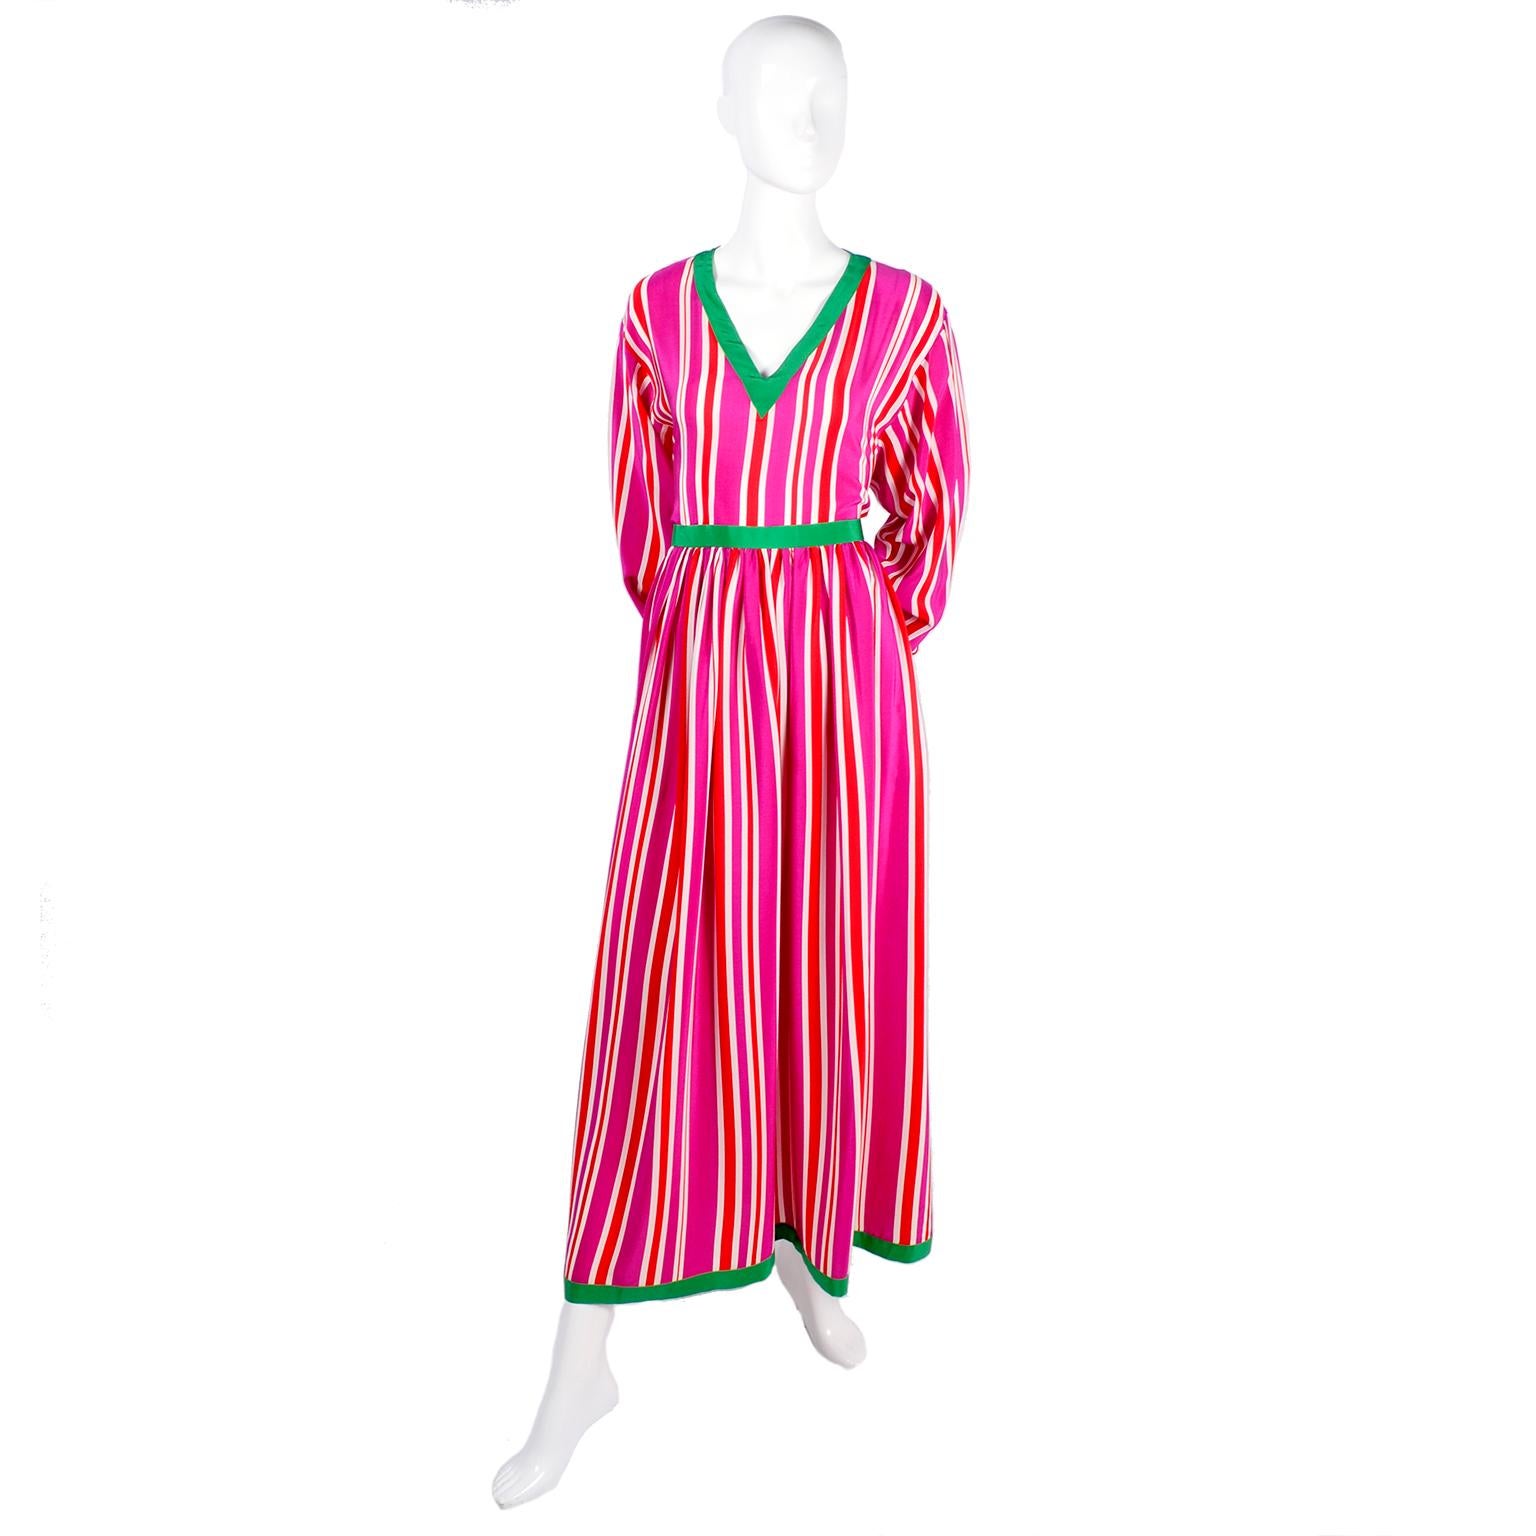 Oscar de la Renta 2 Piece Silk Dress Pink Red & White Stripes W/ Top & Skirt 8 1